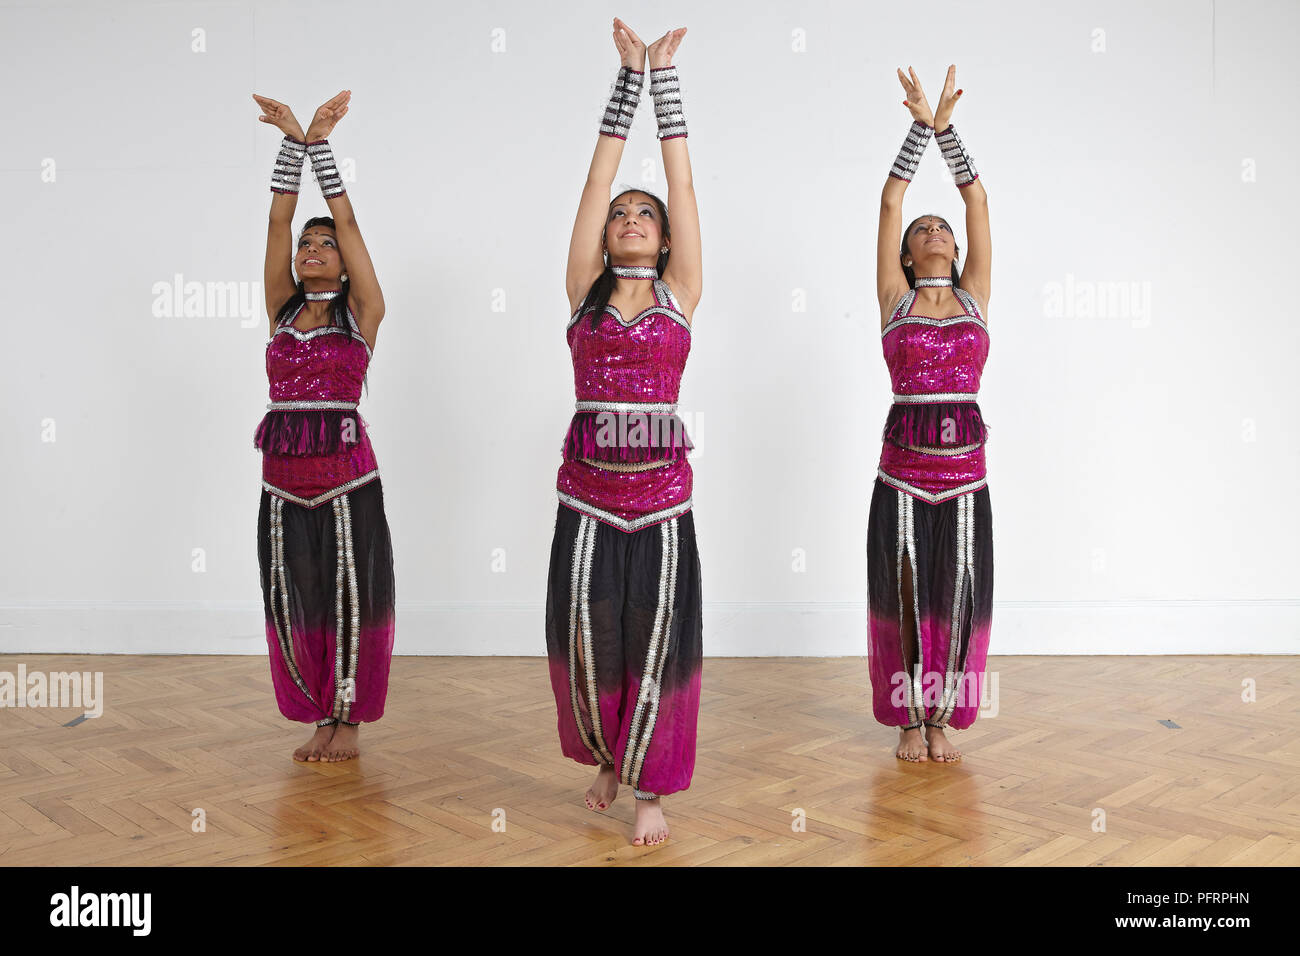 Trois adolescentes d'effectuer des mouvements de danse Bollywood (formation) Banque D'Images